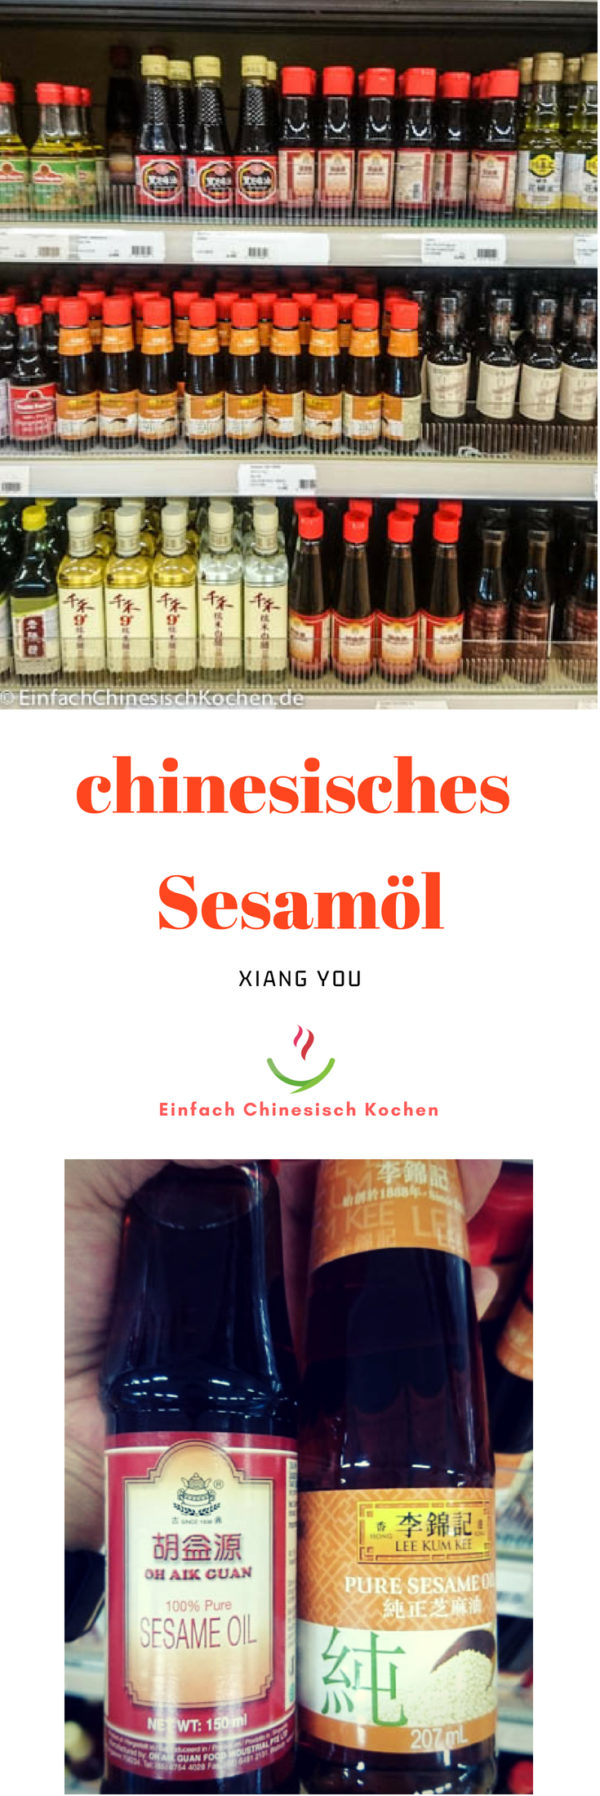 Was ist Sesamöl? Wie nutzt man es? - 香油 (xiāngyóu) | Chinesische Zutaten kennenlernen | Asia Kochen Zutaten